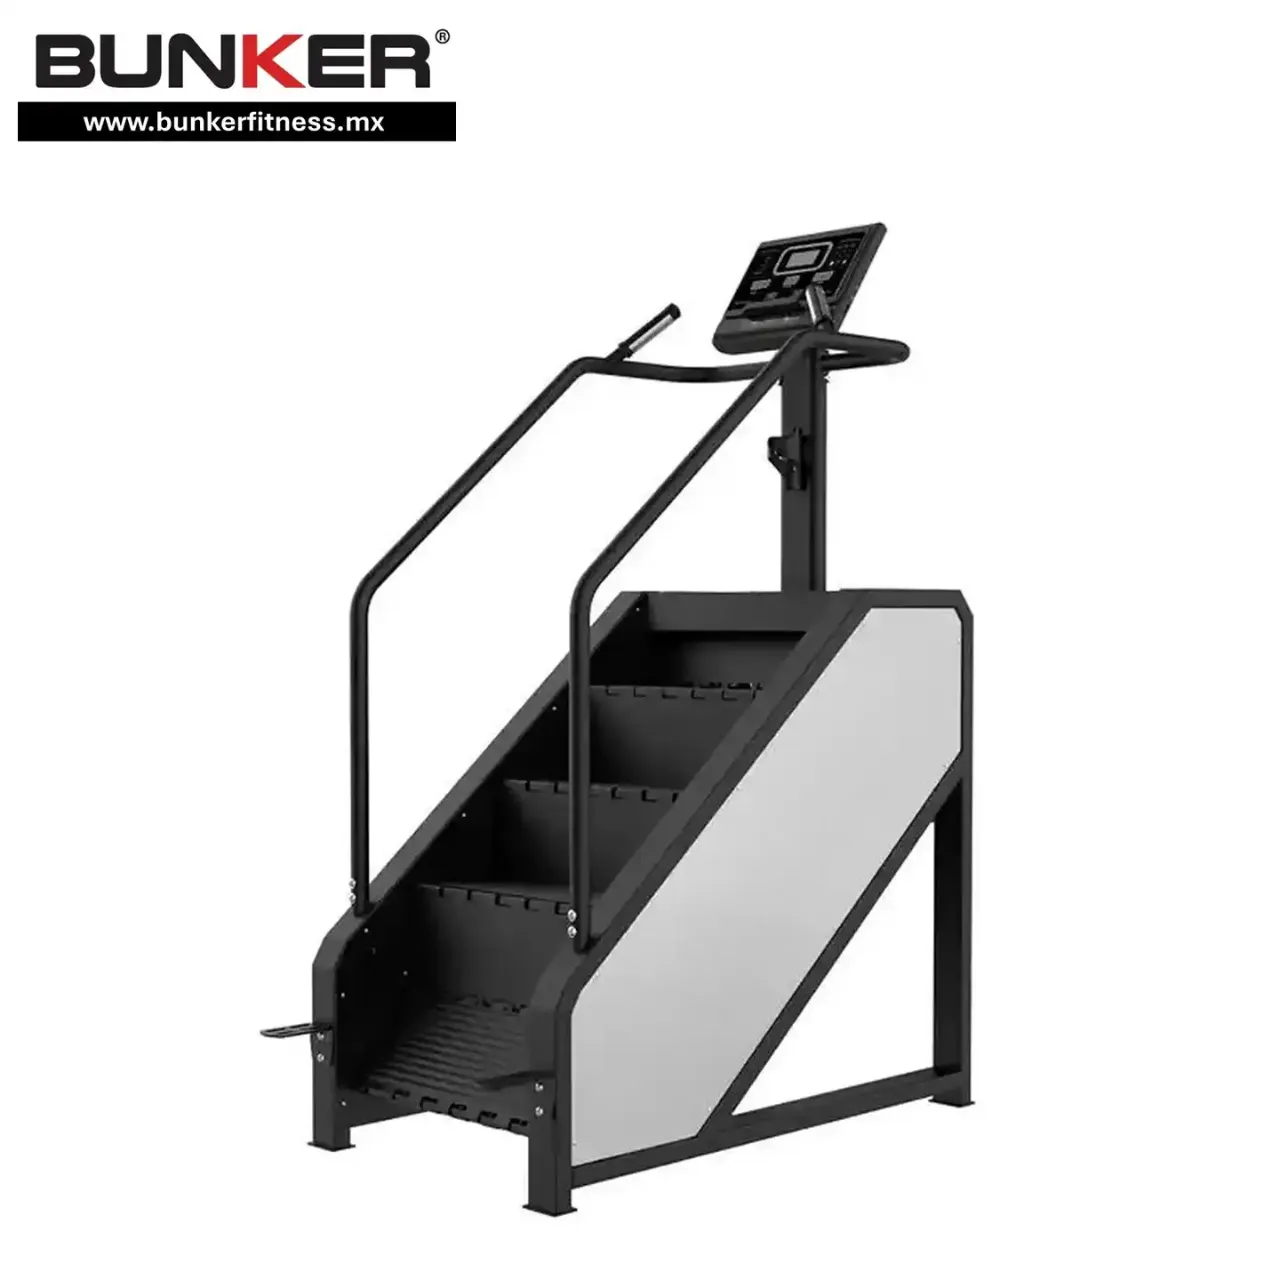 escaladora stair climber bunker fitness para ejercicio bunker gym bunker fitness